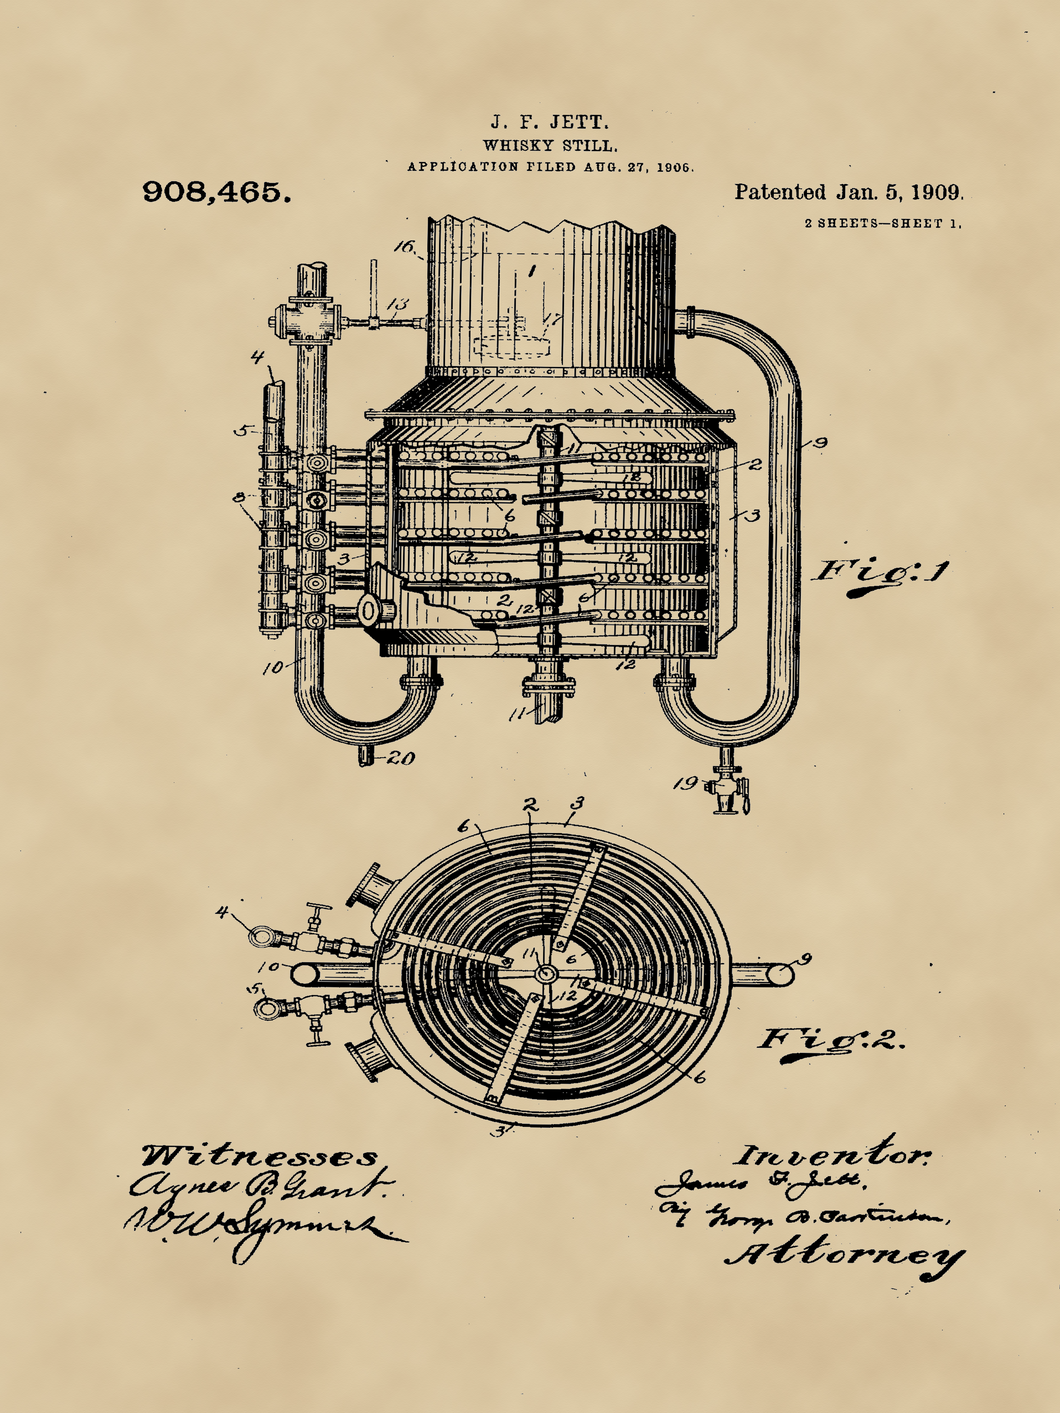 Whiskey lepárló, vintage, industrial stílusú poszter, 1909-es amerikai szabadalmi rajz alapján